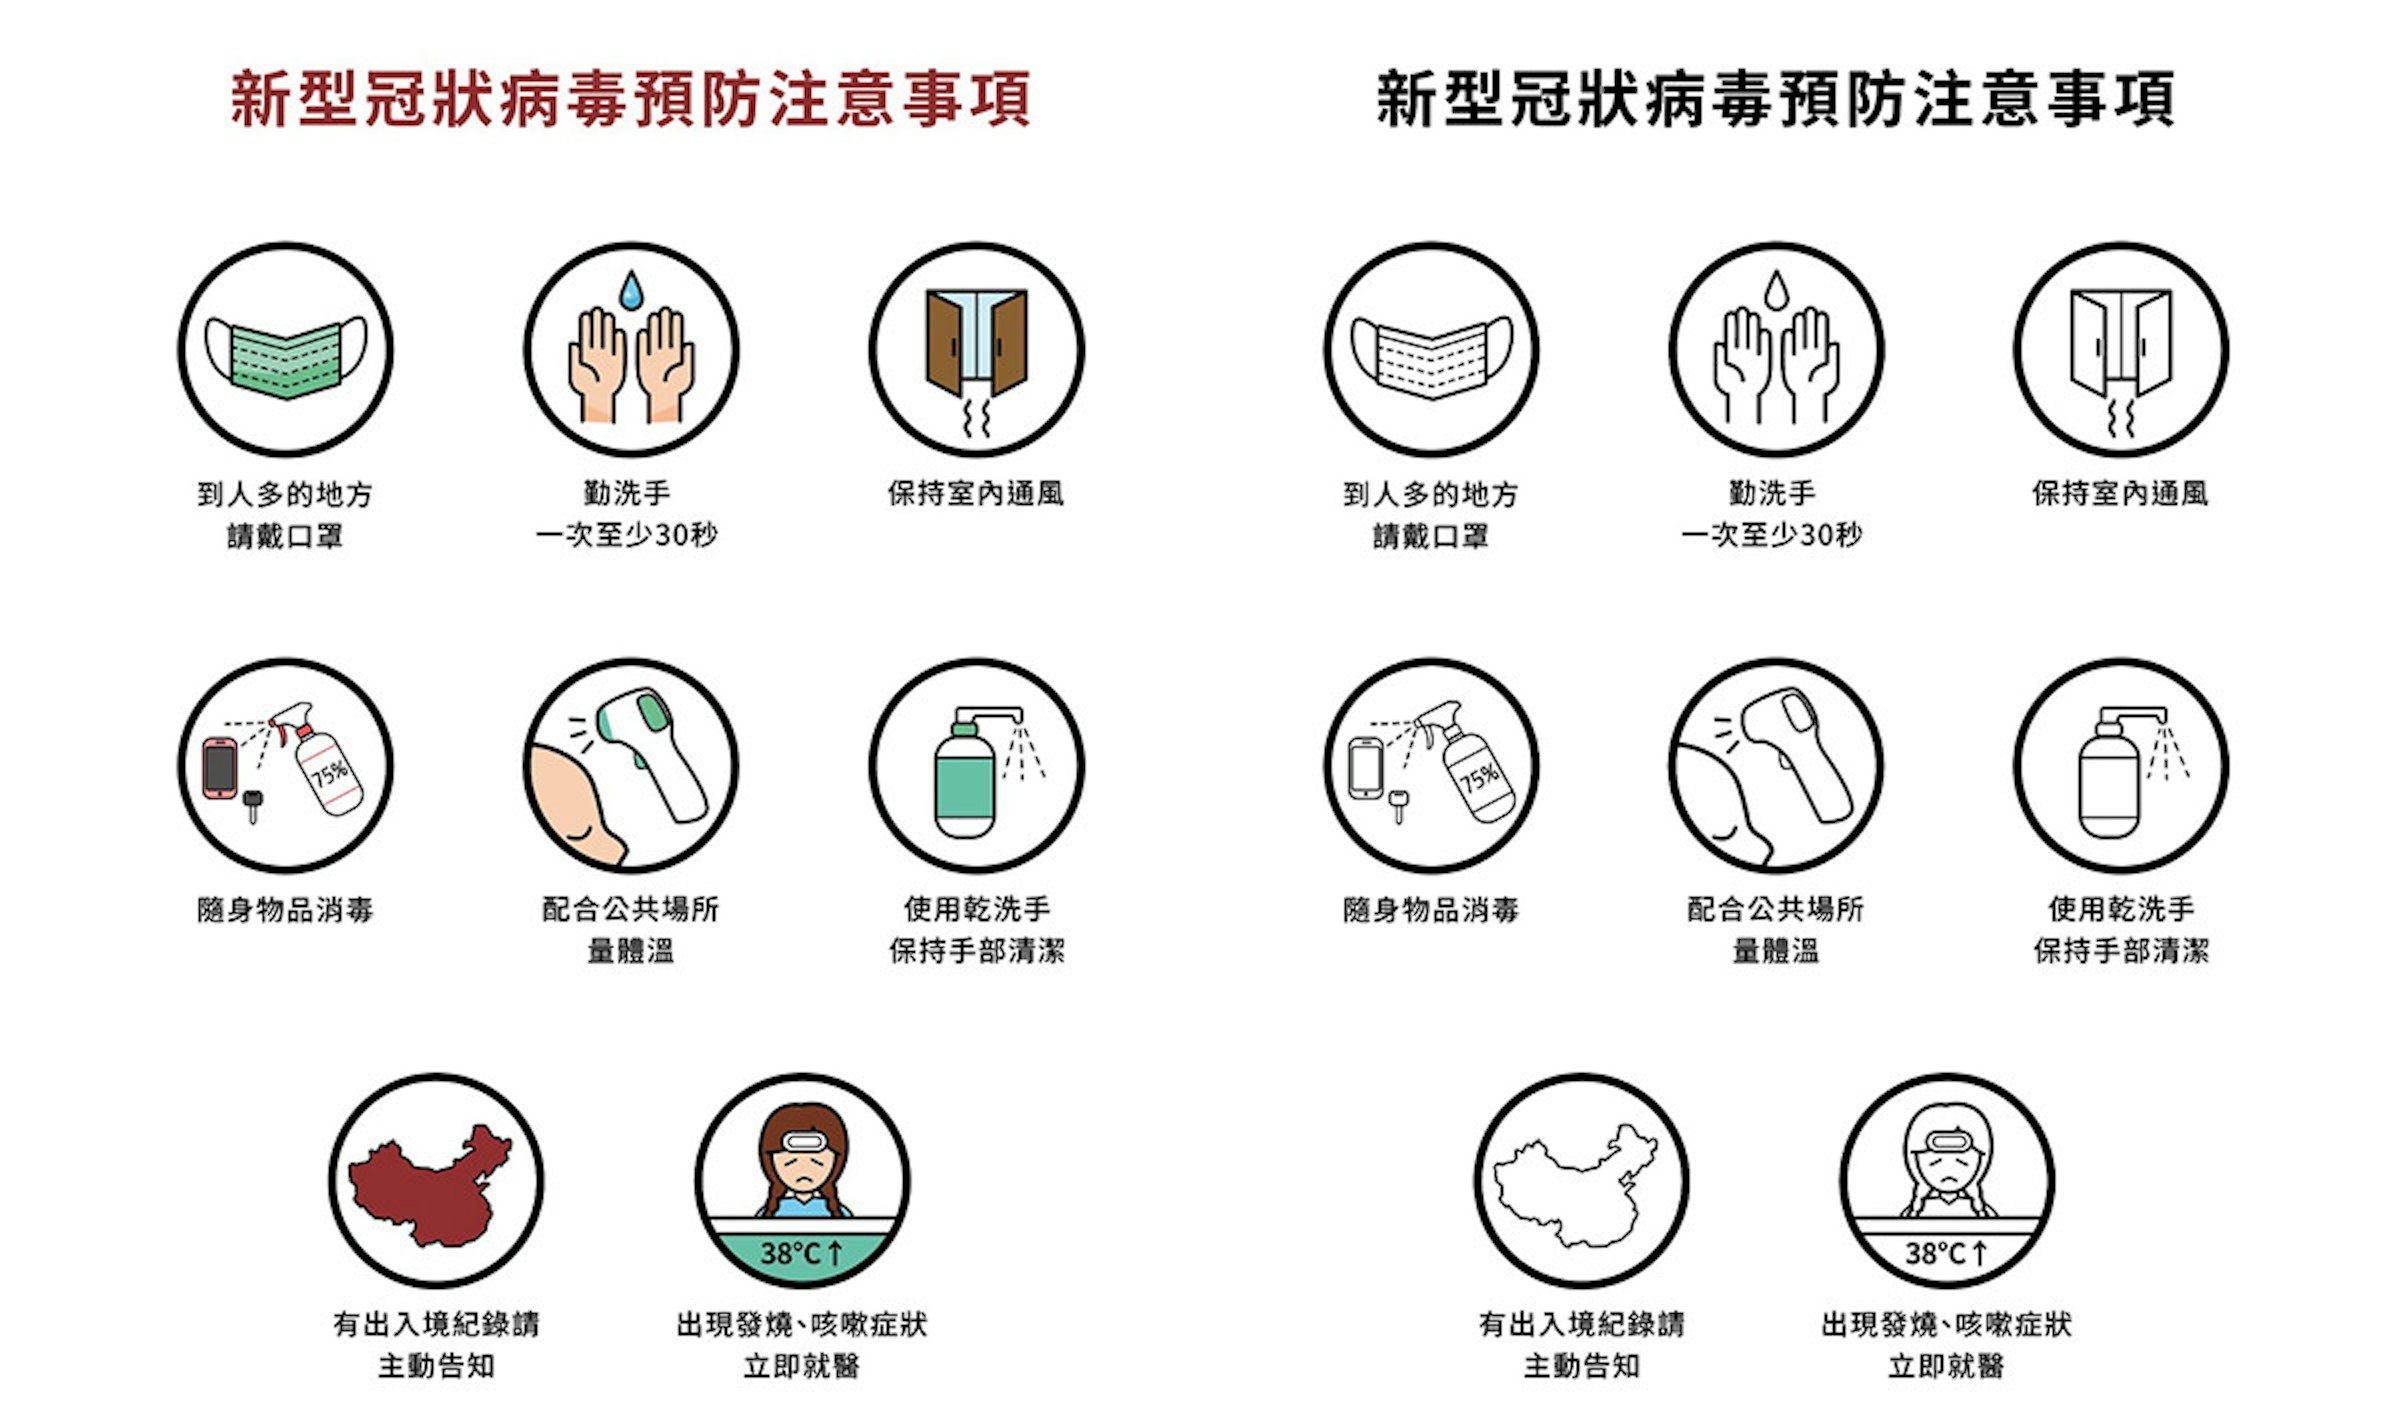 武漢肺炎公共醫療icon免費下載 配戴口罩 勤洗手 酒精消毒圖示全都有 1515 Cool3c